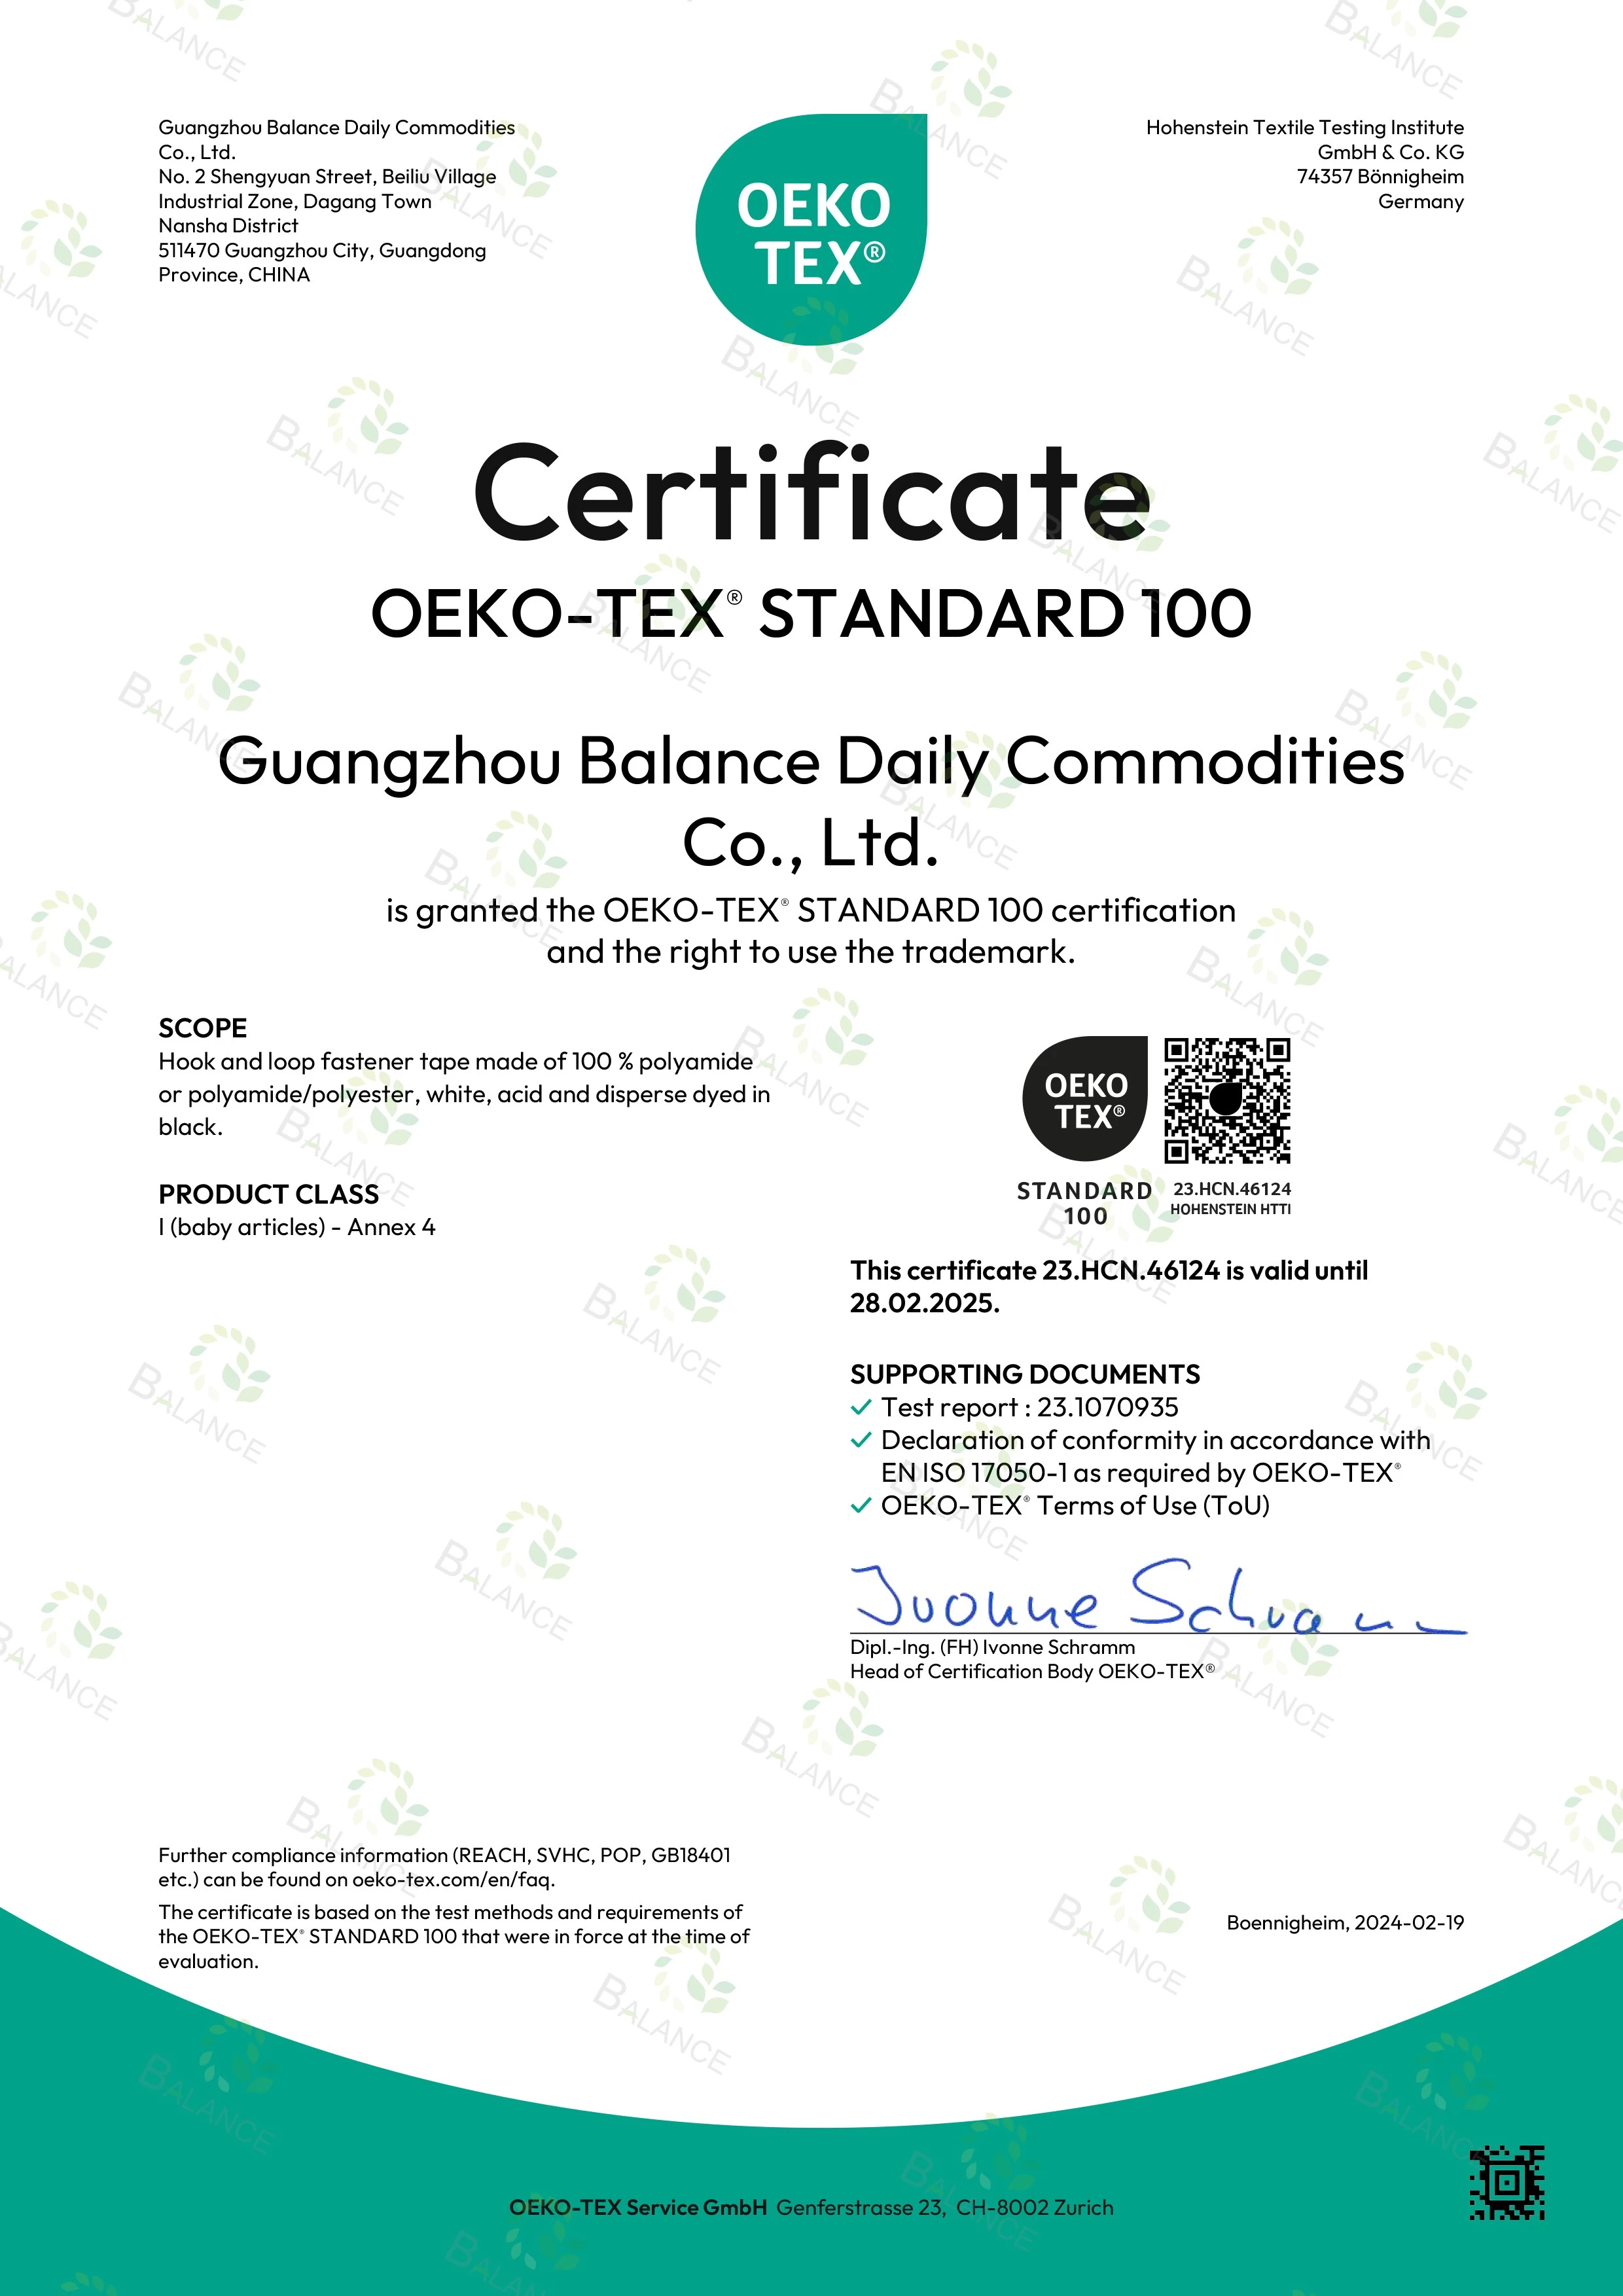 Волнующие новости! Наши ленты с крючками и петлями получили сертификат OEKO-TEX' STANDARD 100.